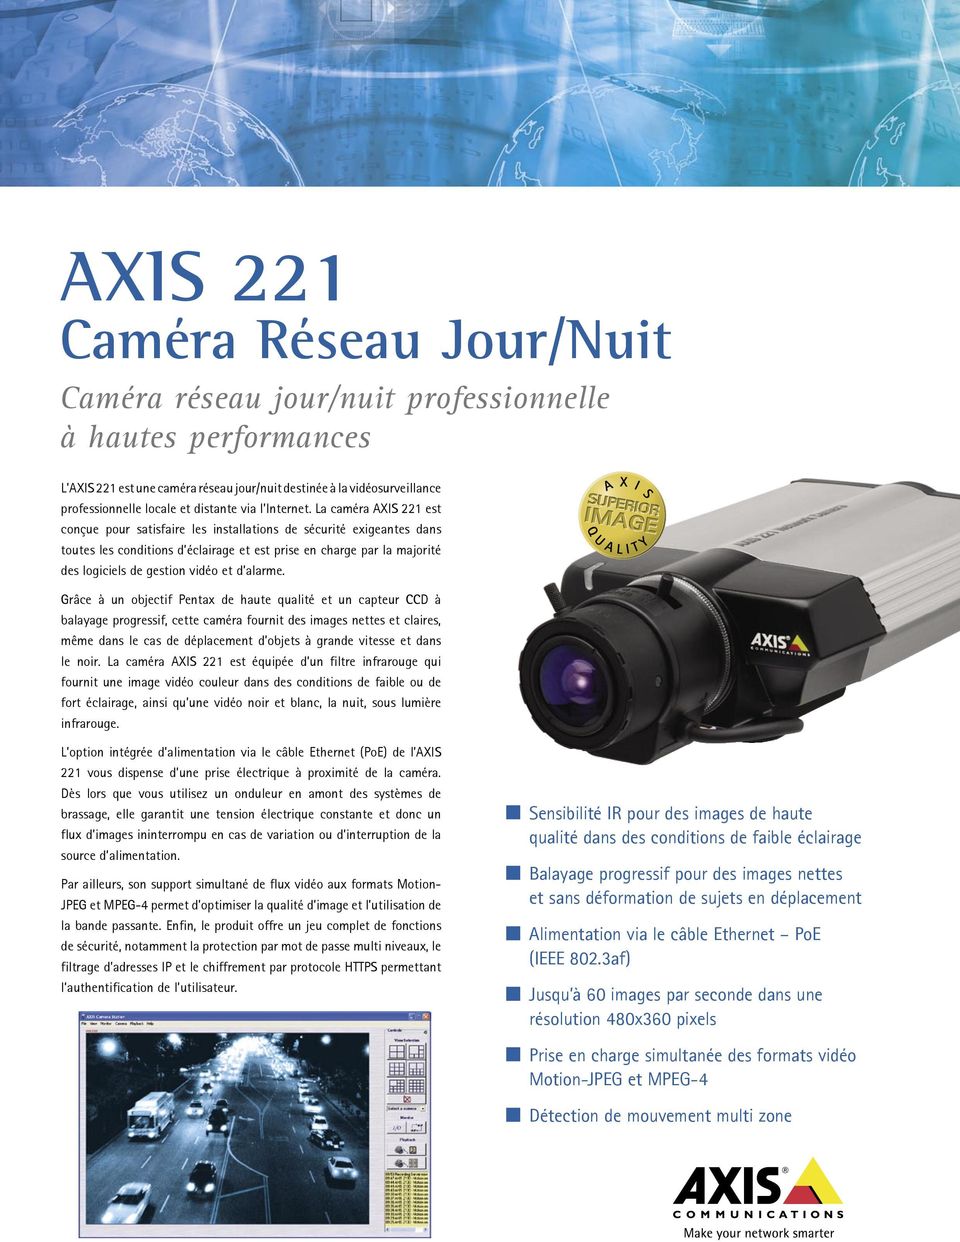 La caméra AXIS 221 est conçue pour satisfaire les installations de sécurité exigeantes dans toutes les conditions d éclairage et est prise en charge par la majorité des logiciels de gestion vidéo et